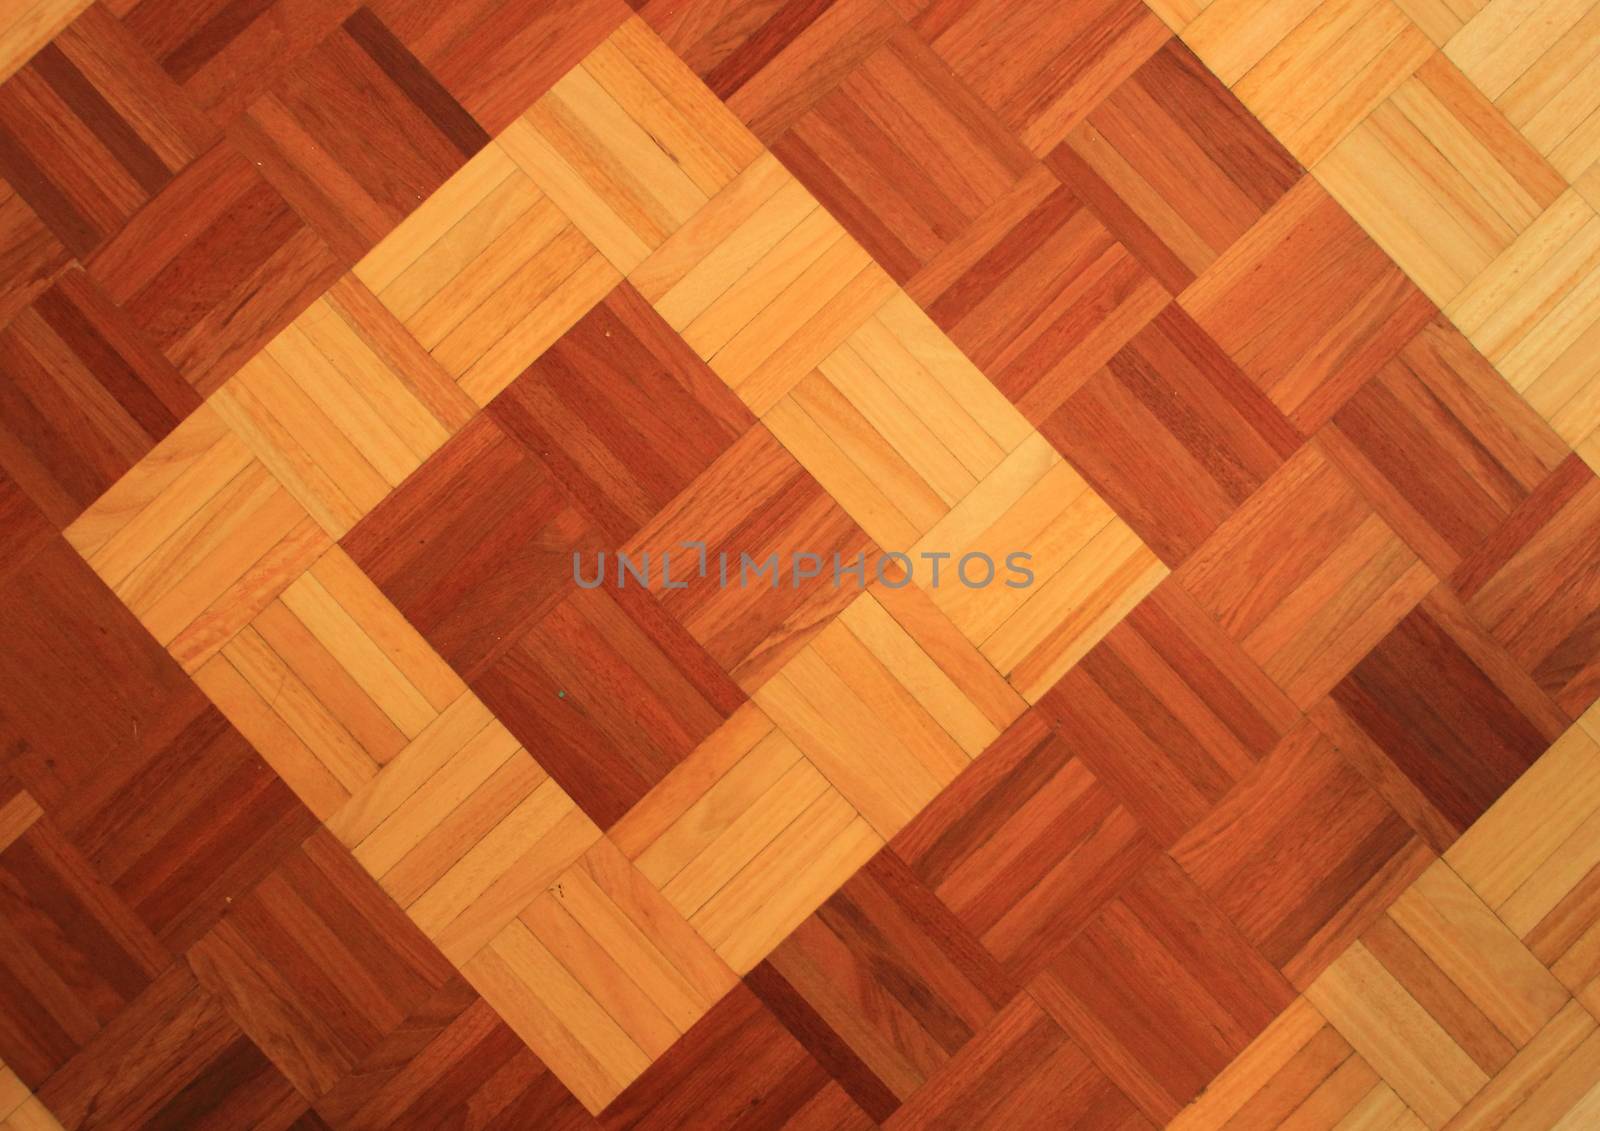 Teakwood floor of quadratic sticks forming two quadrants